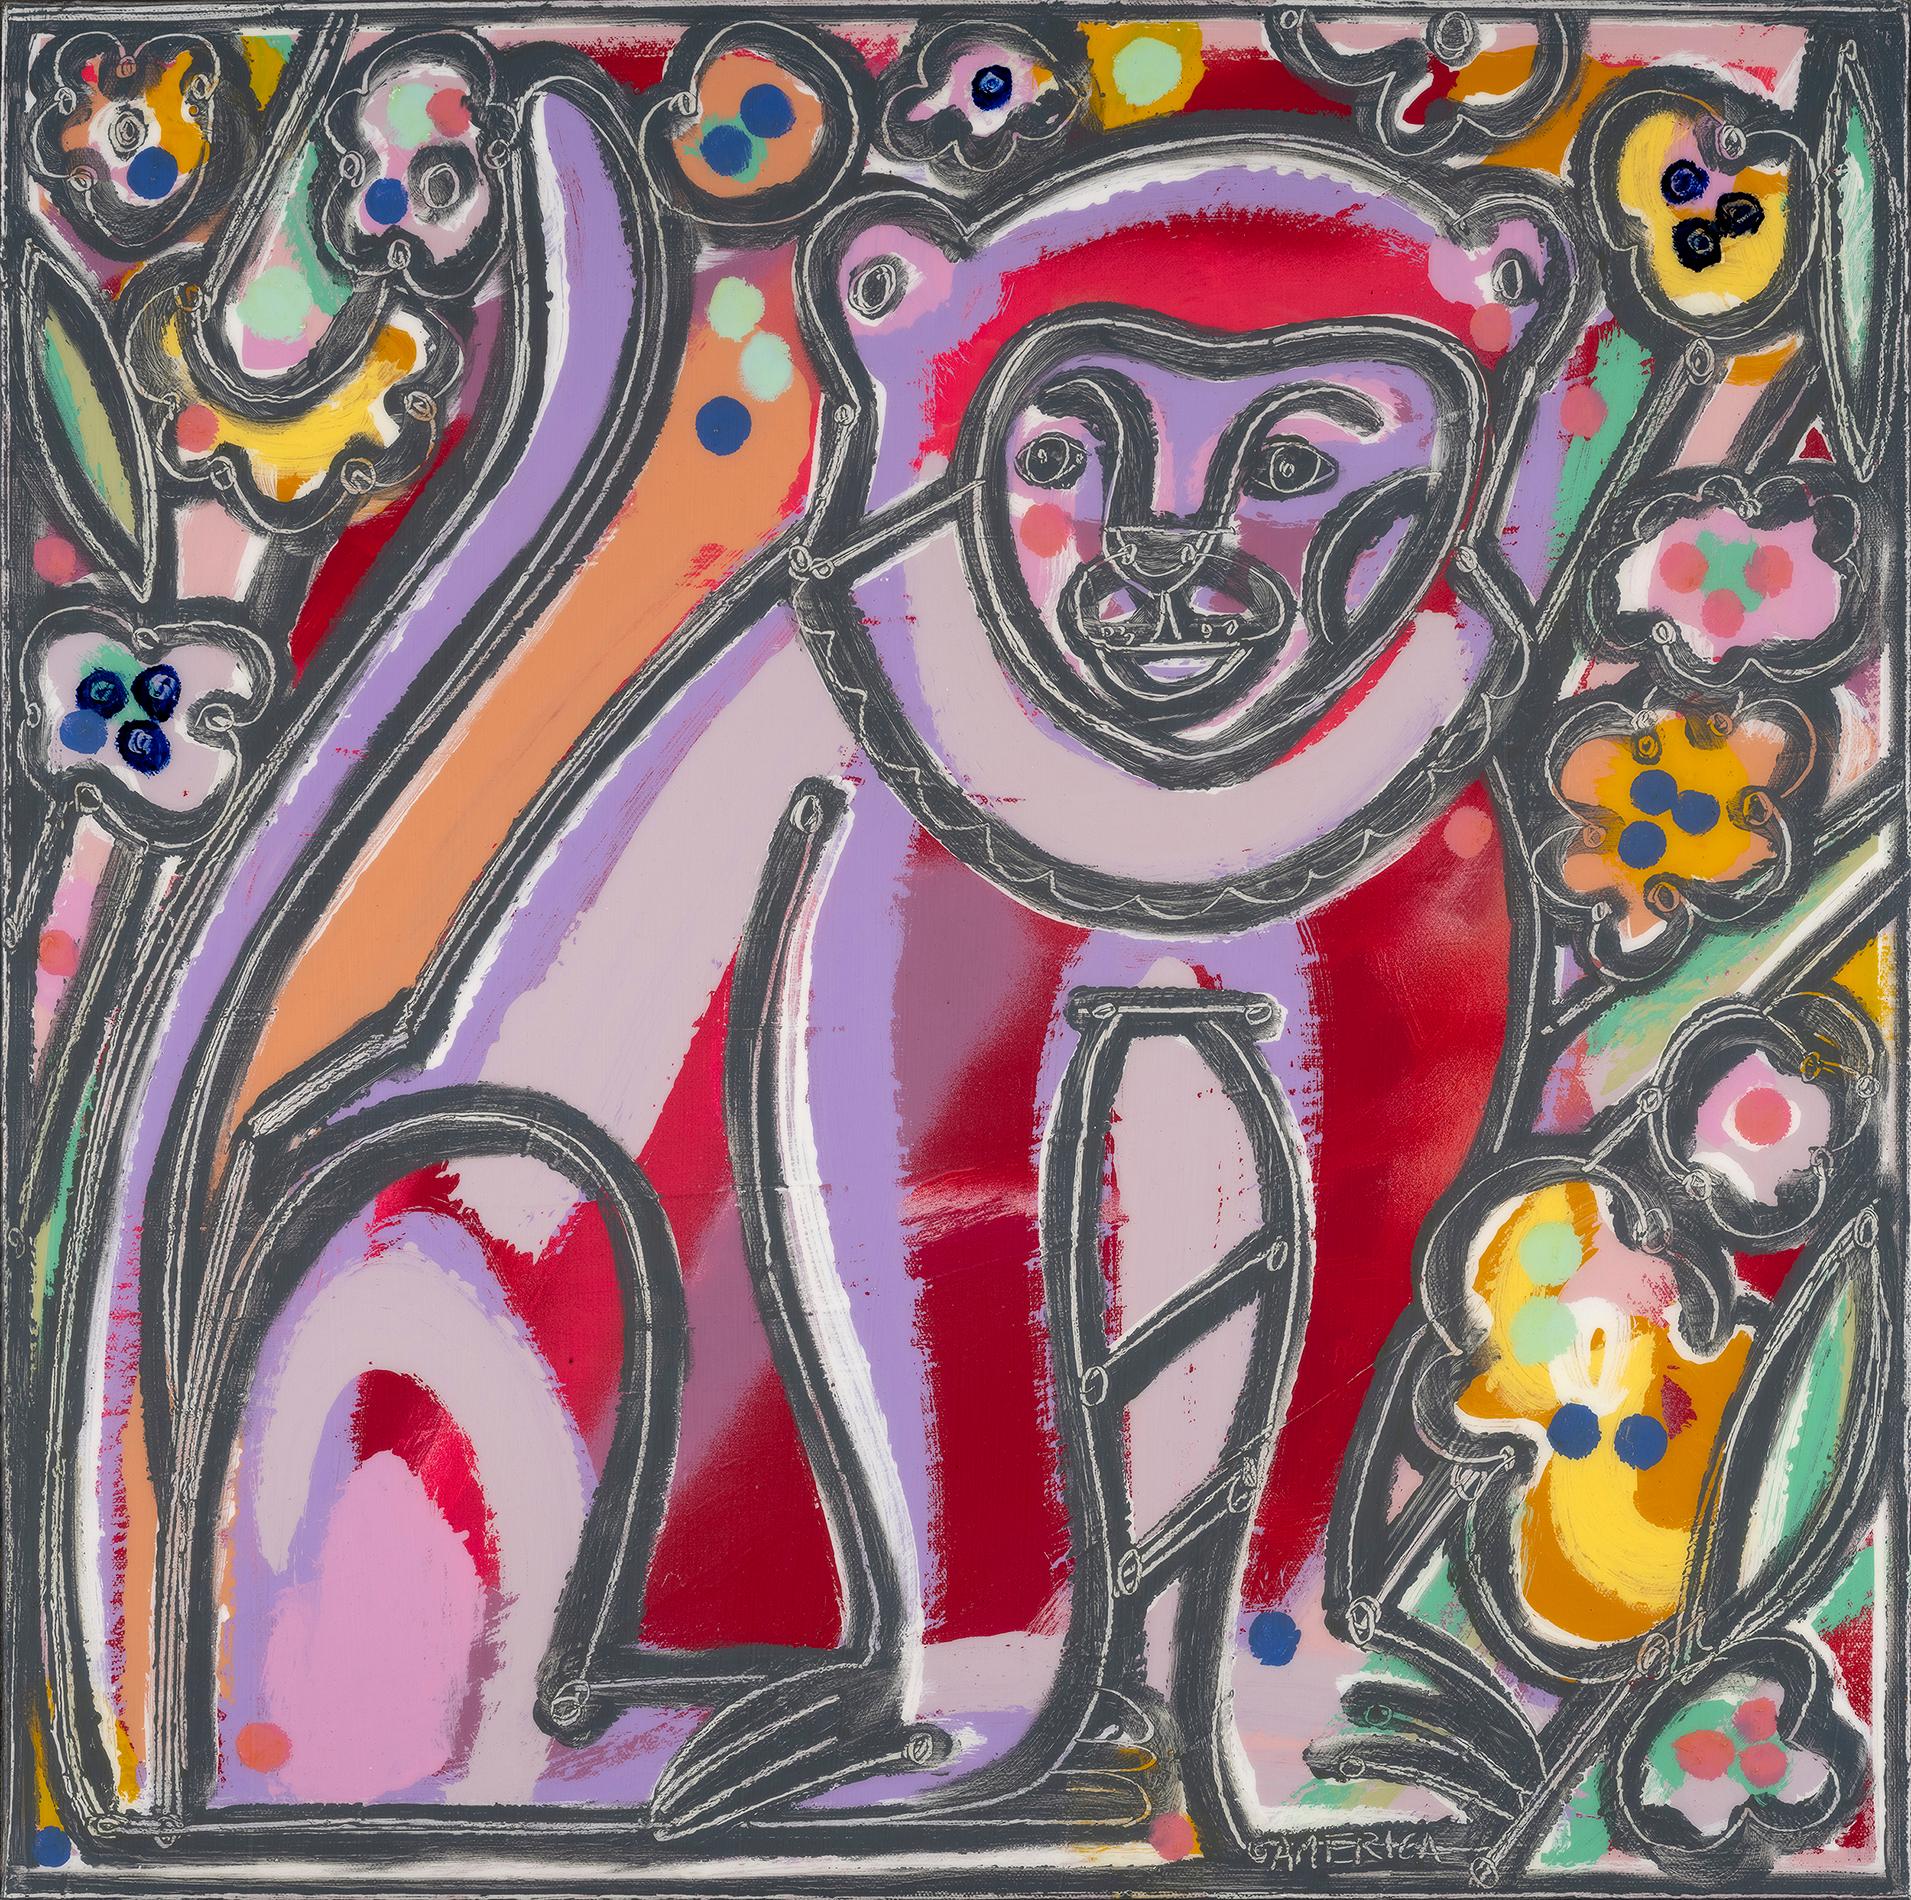 Amerika Martin
"Affe mit Obstblüten"
Öl & Acryl auf Leinwand
24 x 24 in. ; 25.5 x 25.5 in. Gerahmt
______________

Die in Los Angeles lebende Künstlerin America Martin lässt sich von ihrem kolumbianischen Erbe und der menschlichen Figur inspirieren,